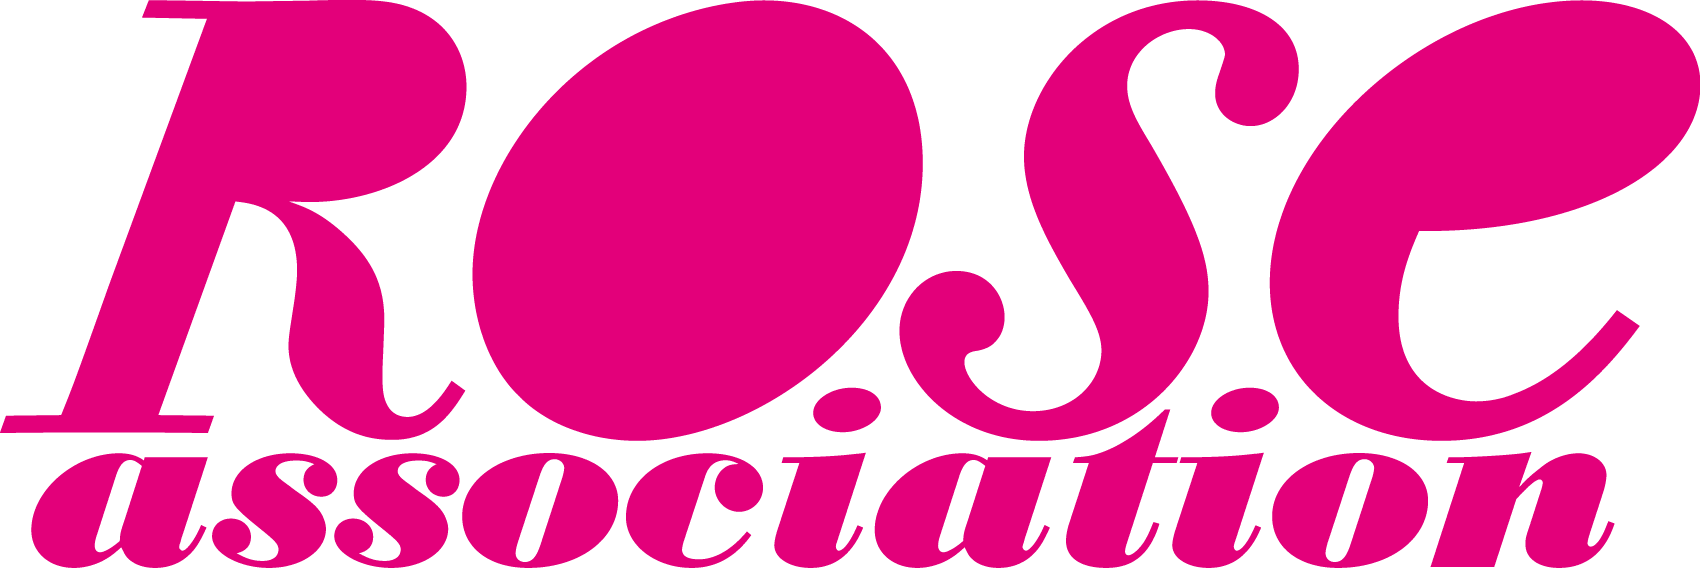 Logo - Rose Magazine (1700x568)